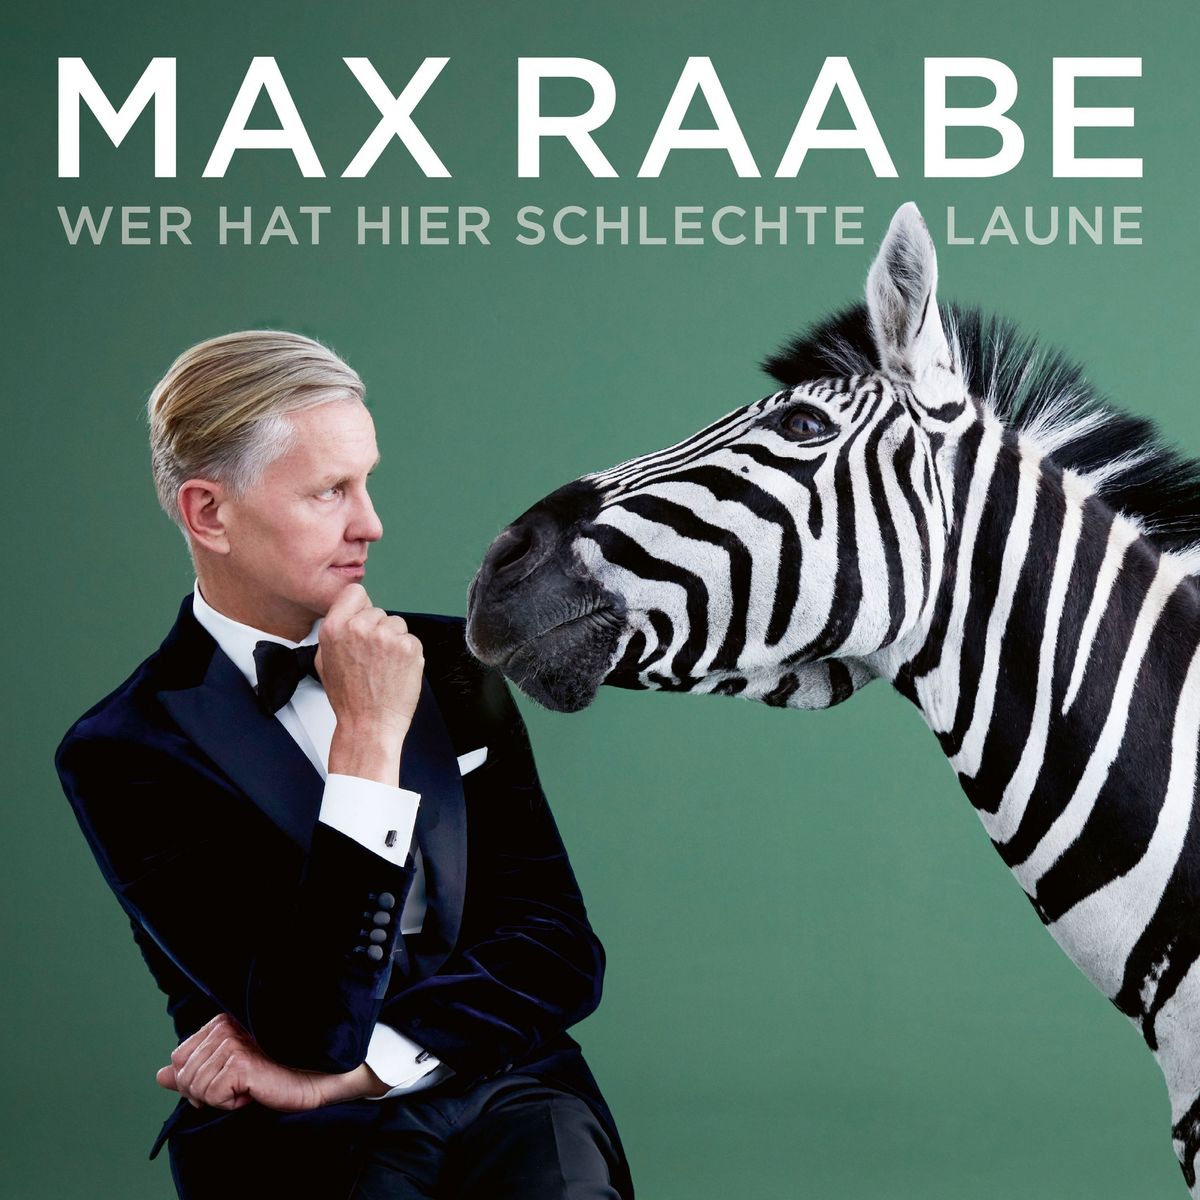 Max Raabe & Palast Orchester "Wer hat hier schlechte Laune" \/ Karlsruhe